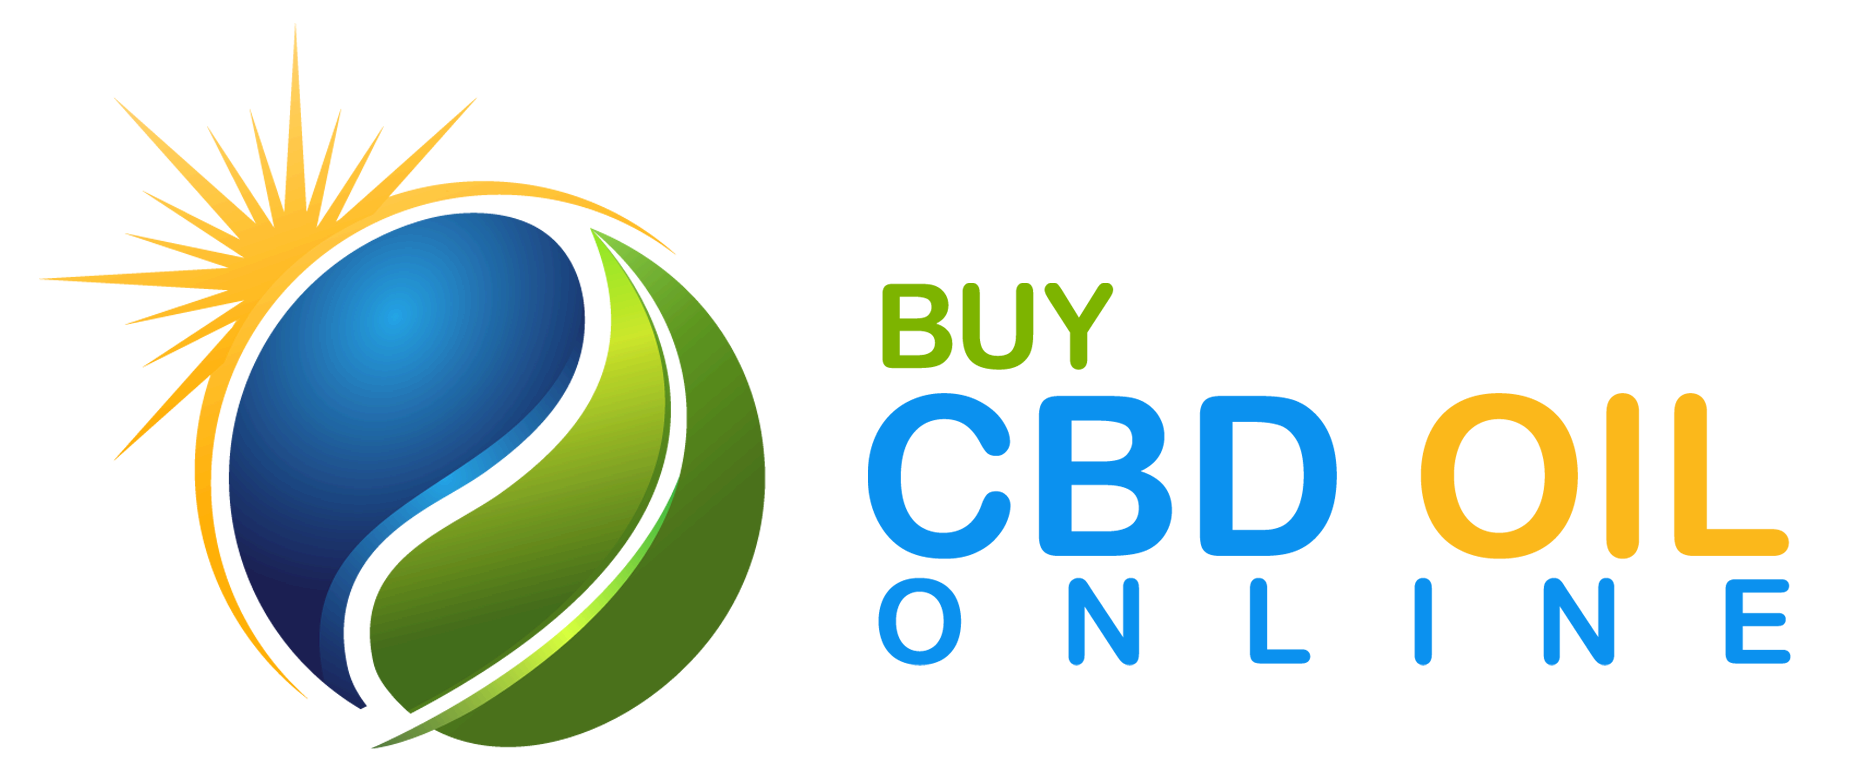 Buy CBD Oil Online Kore Organic Vape Oil